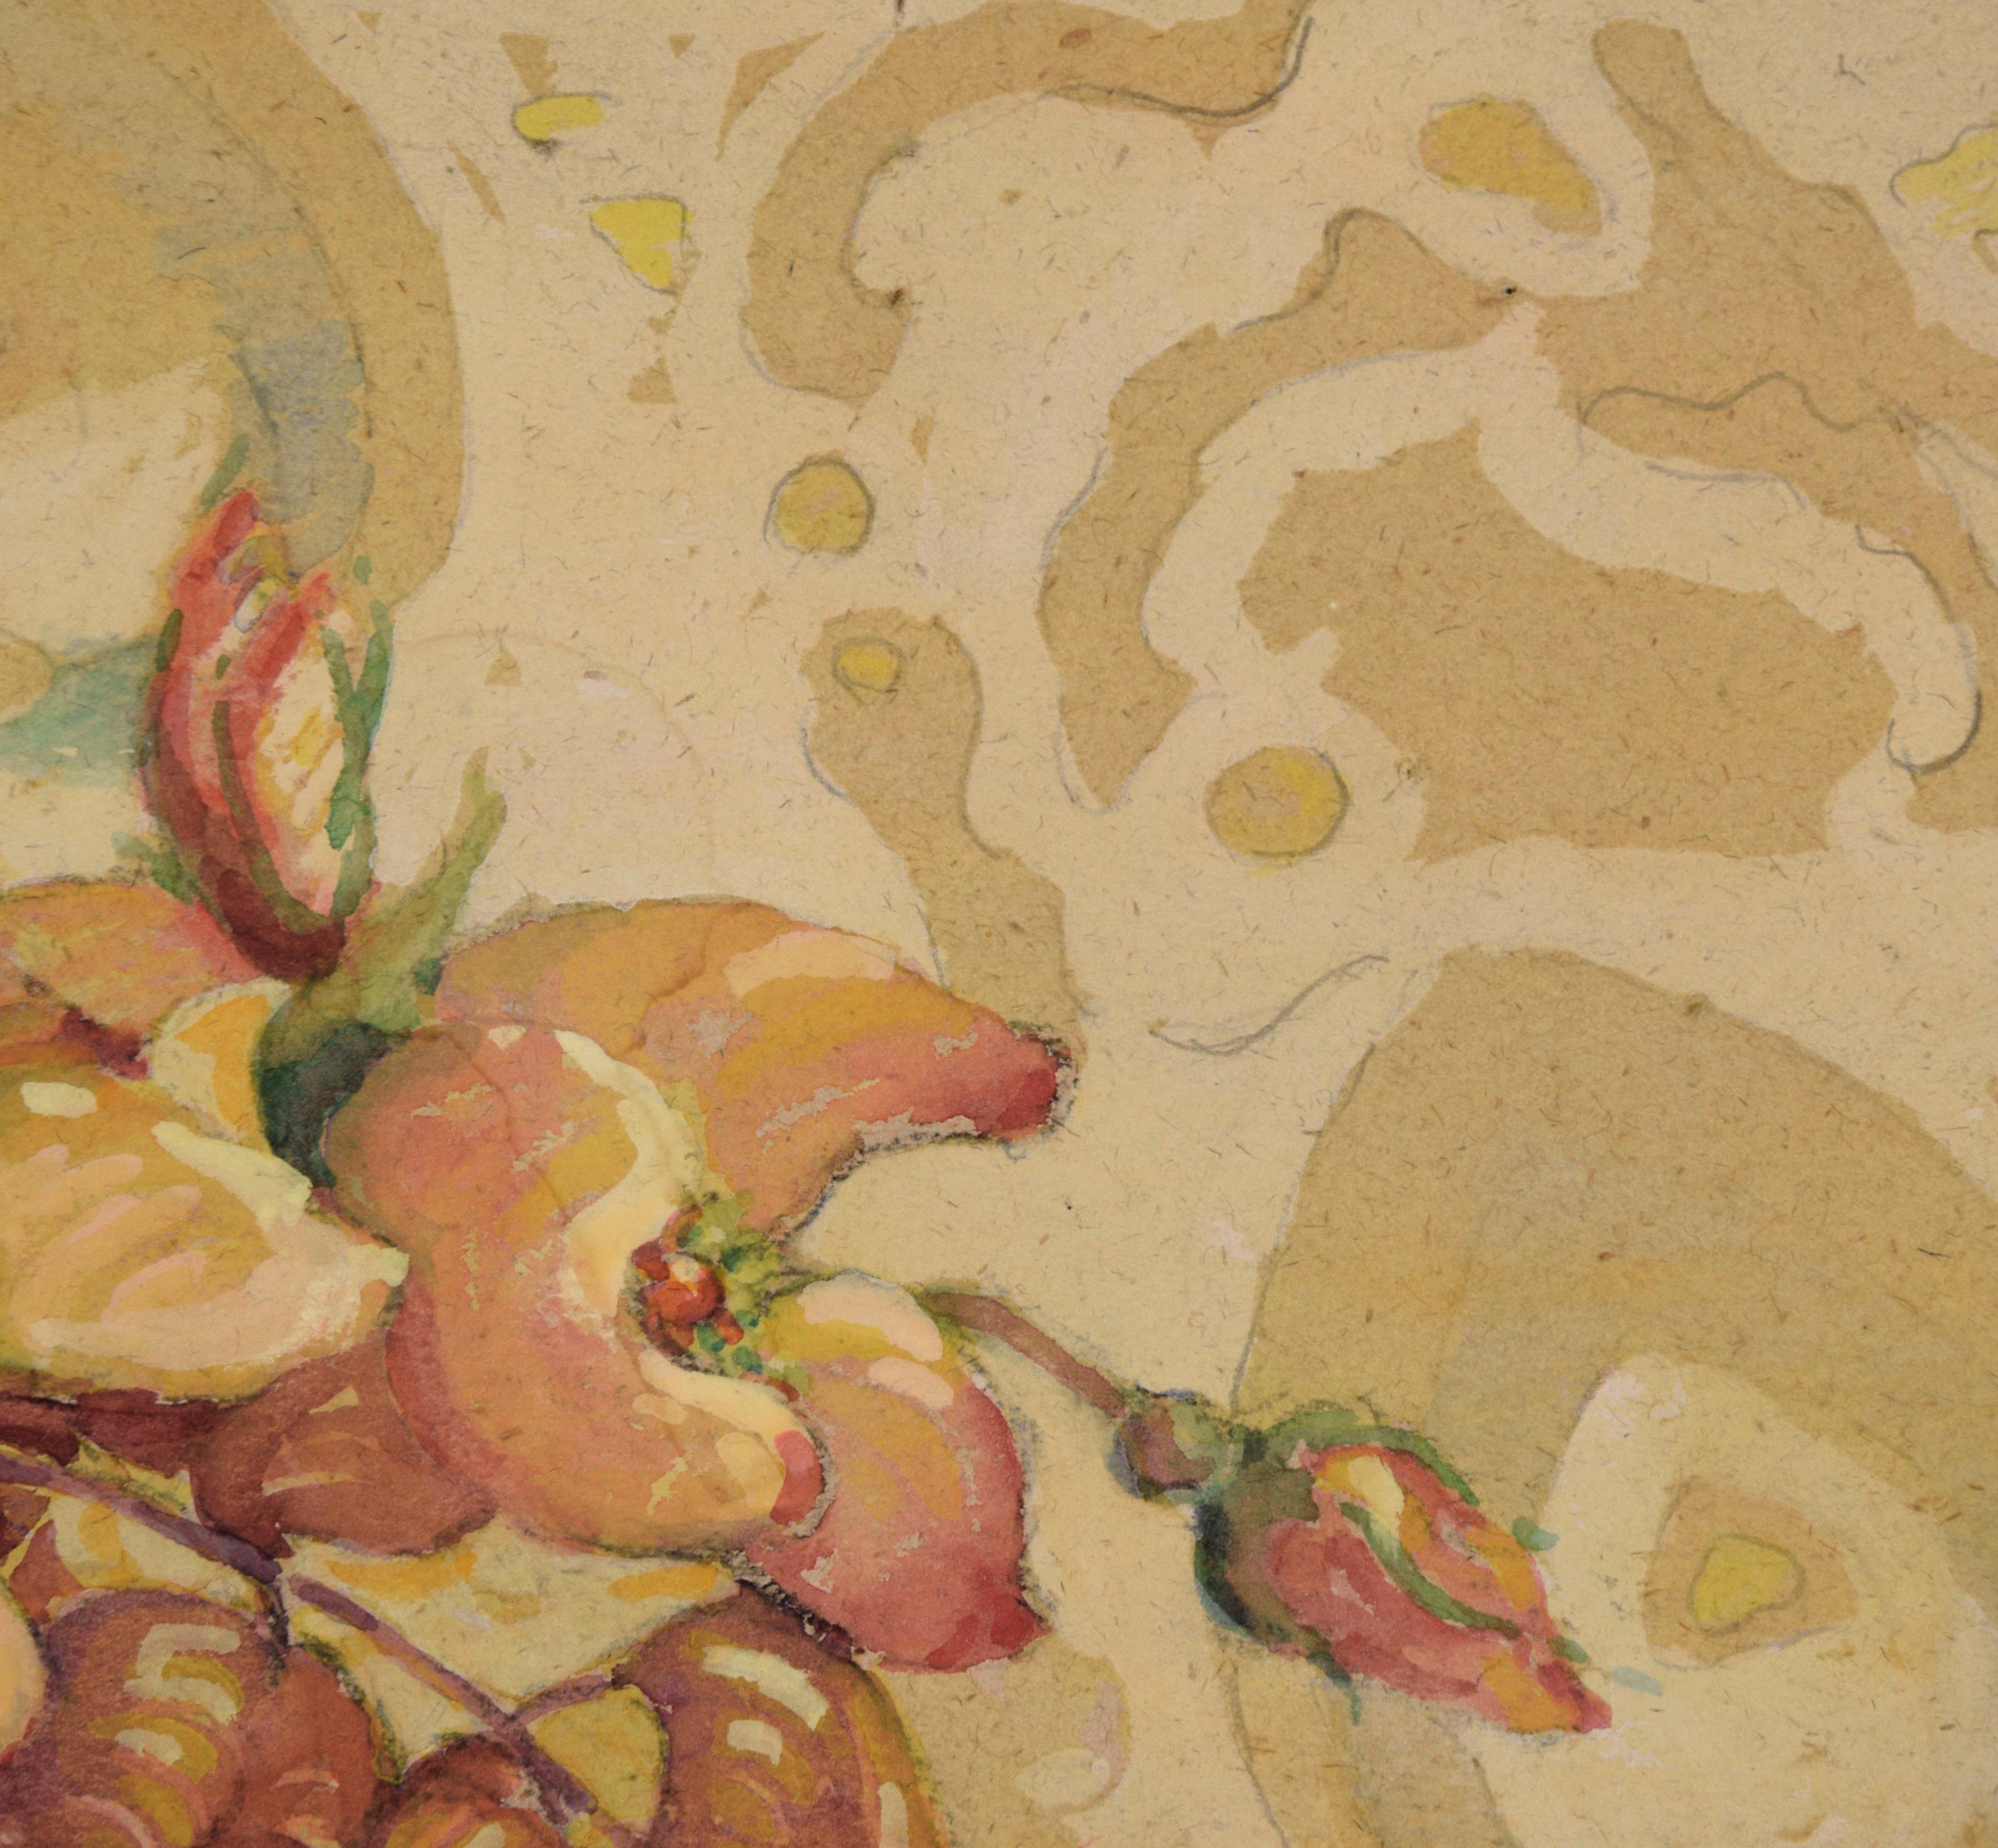 Lebendiges Stillleben von Free Dean (Amerikaner, 1907-1987). Gekonnt ausgeführte Darstellung von gelben, roten und orangenen Blumen in einem Topf. Links neben dem Arrangement steht ein kleiner, mit Figuren verzierter Krug. Die Spiegelungen auf dem